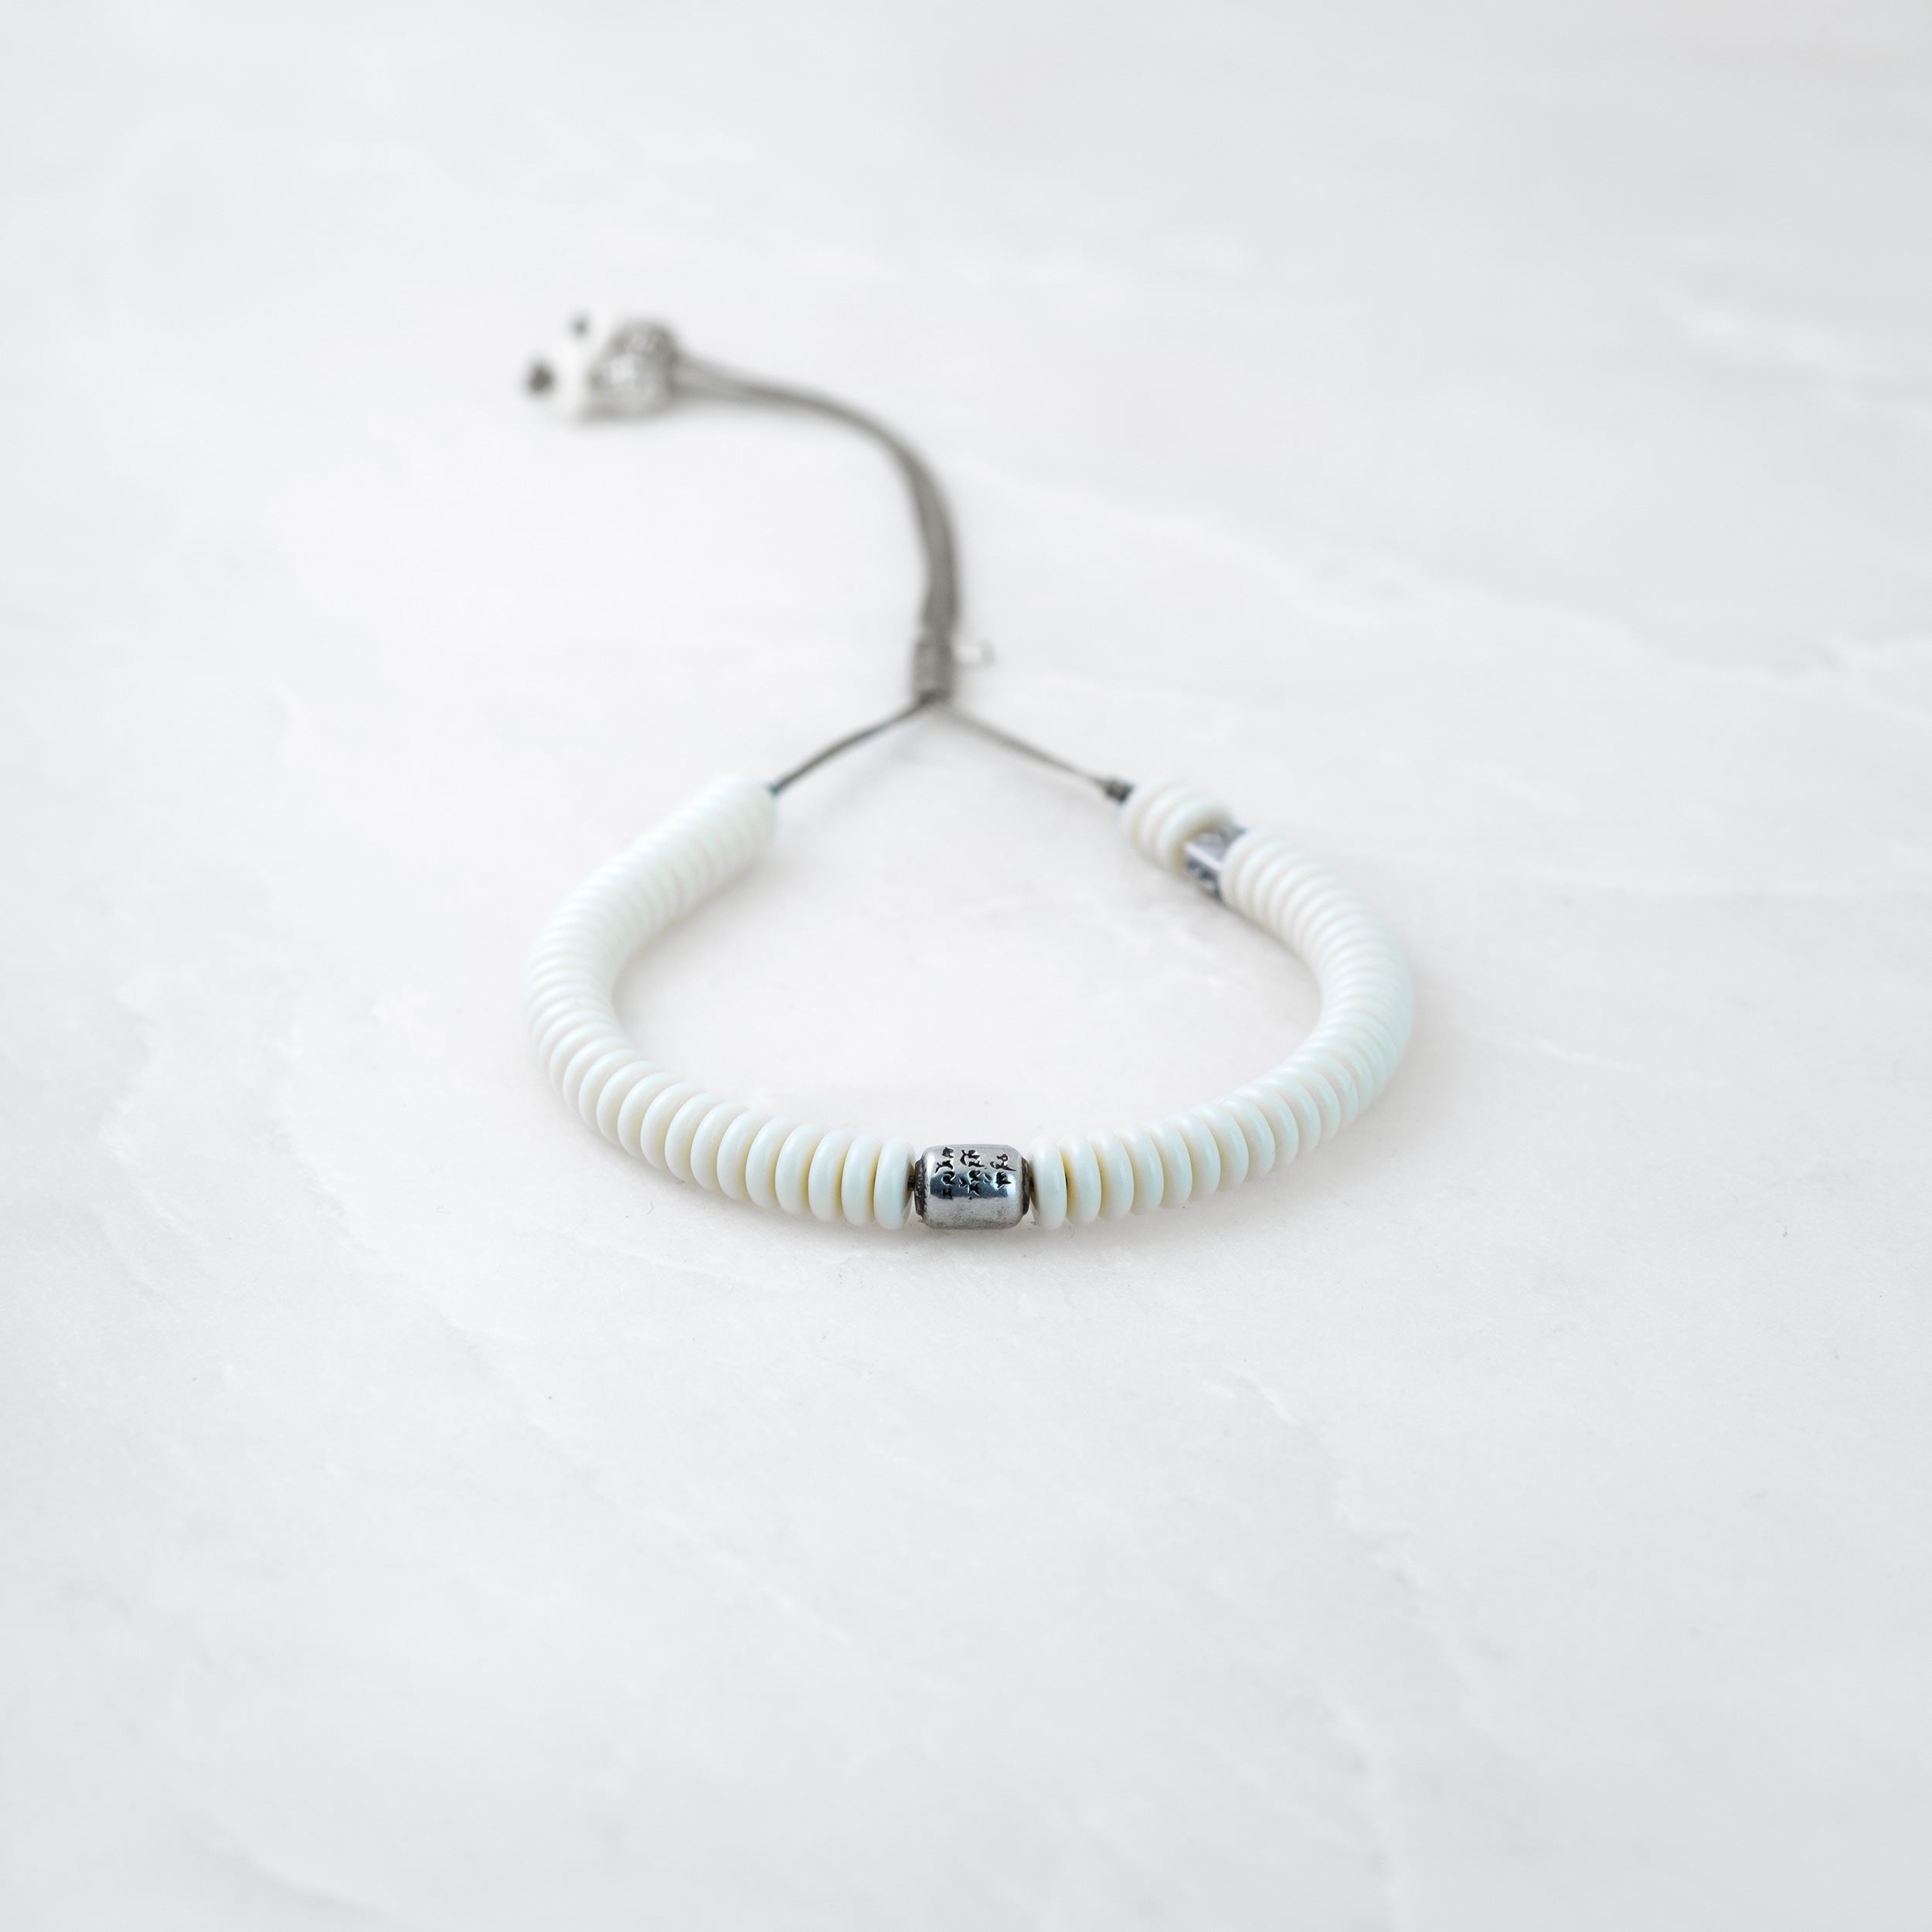 MOSO bracelet - Manikorlo silver